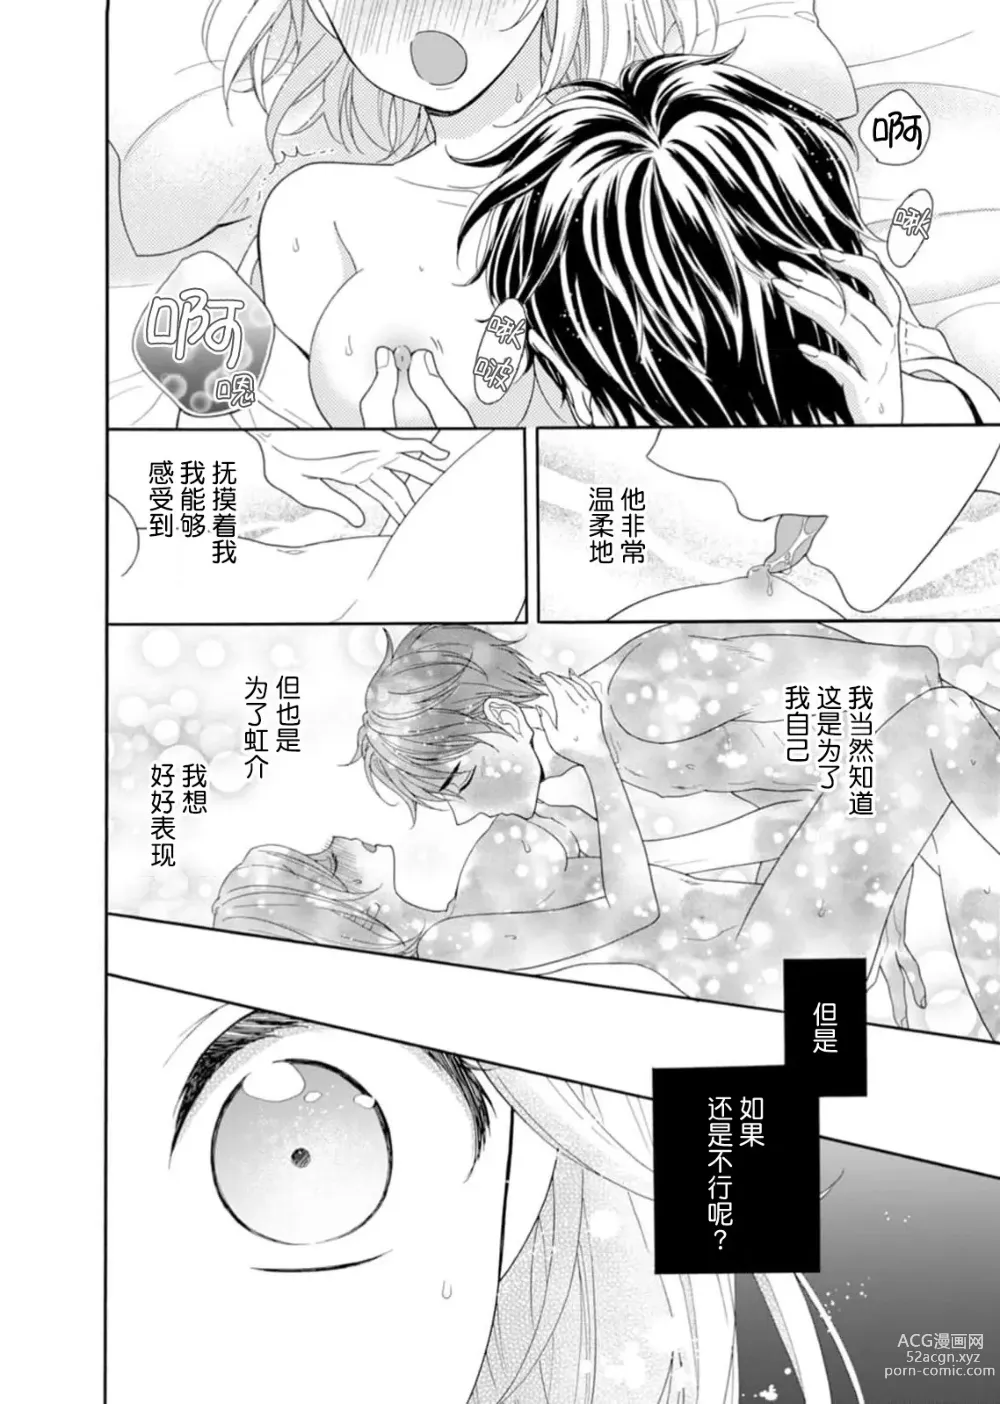 Page 22 of manga 再度初体验！与那时不同。深入灵魂的快感连心都融化…